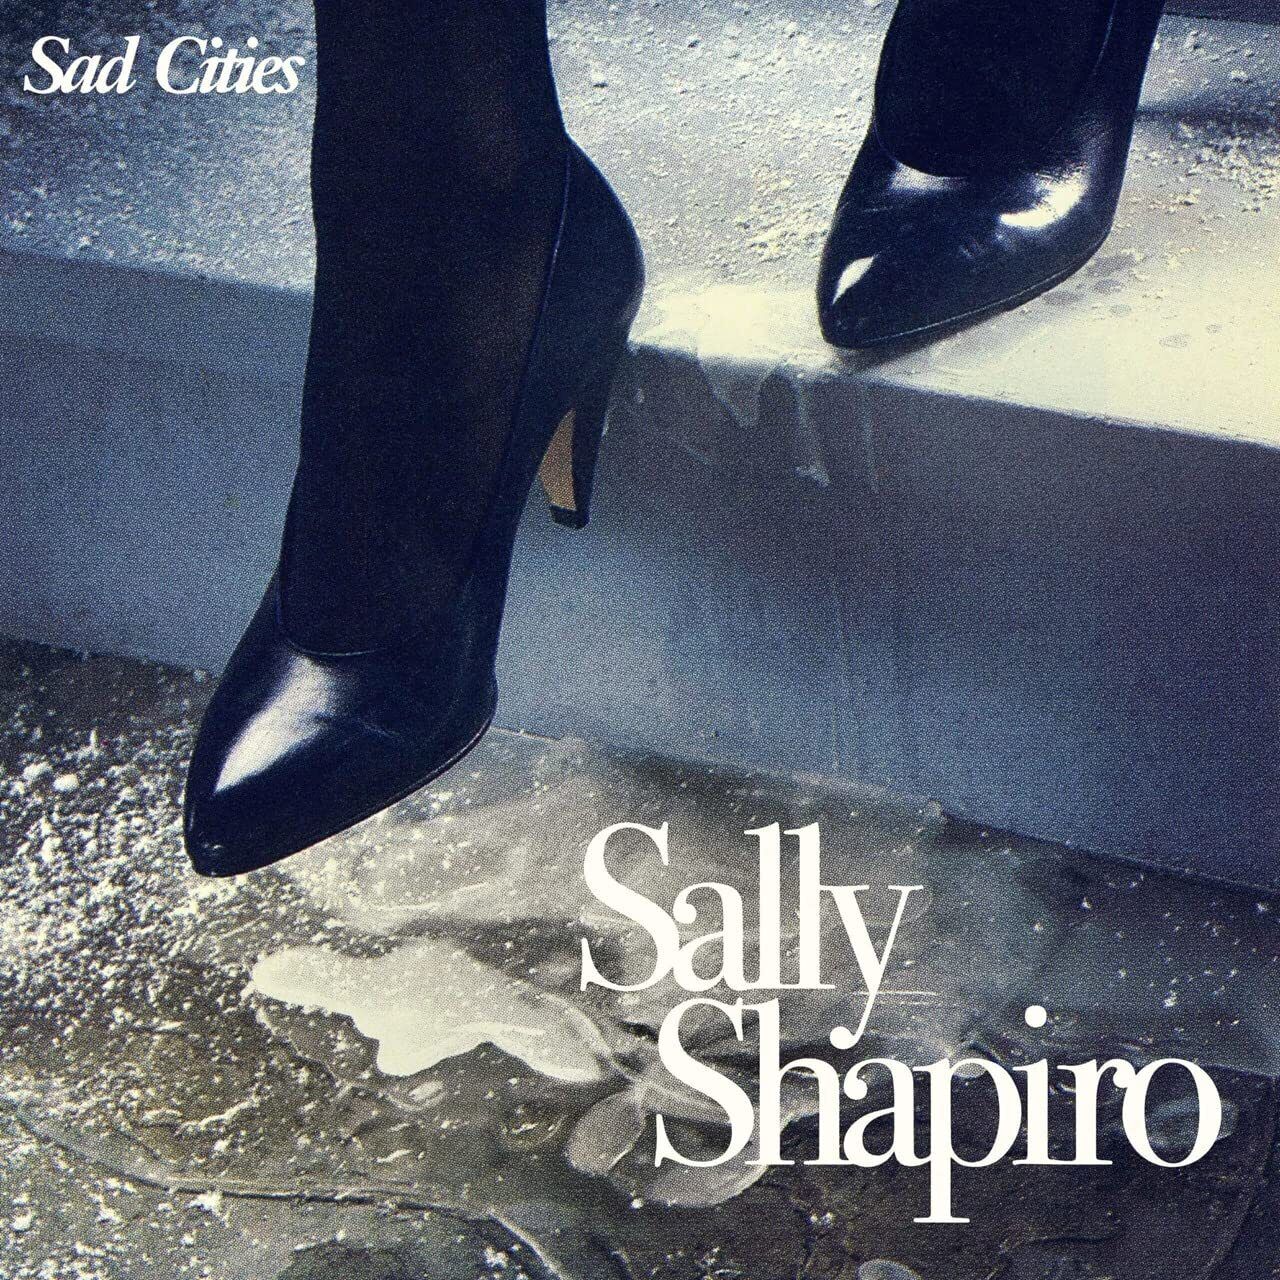 Sally Shapiro "Sad Cities" 2LP